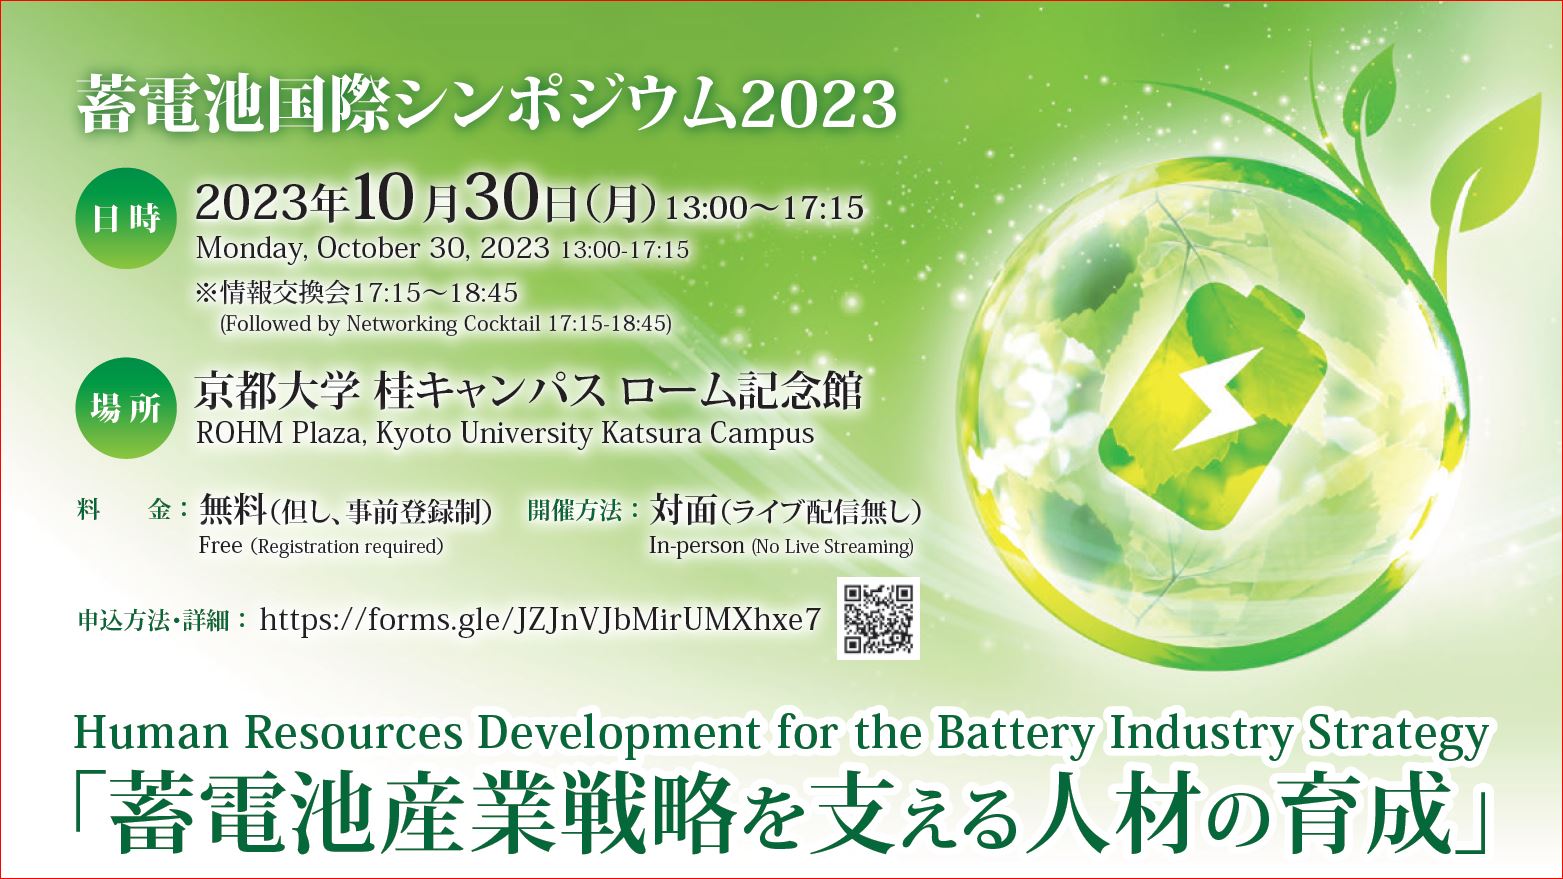 「蓄電池国際シンポジウム2023」開催（10月30日）のお知らせ